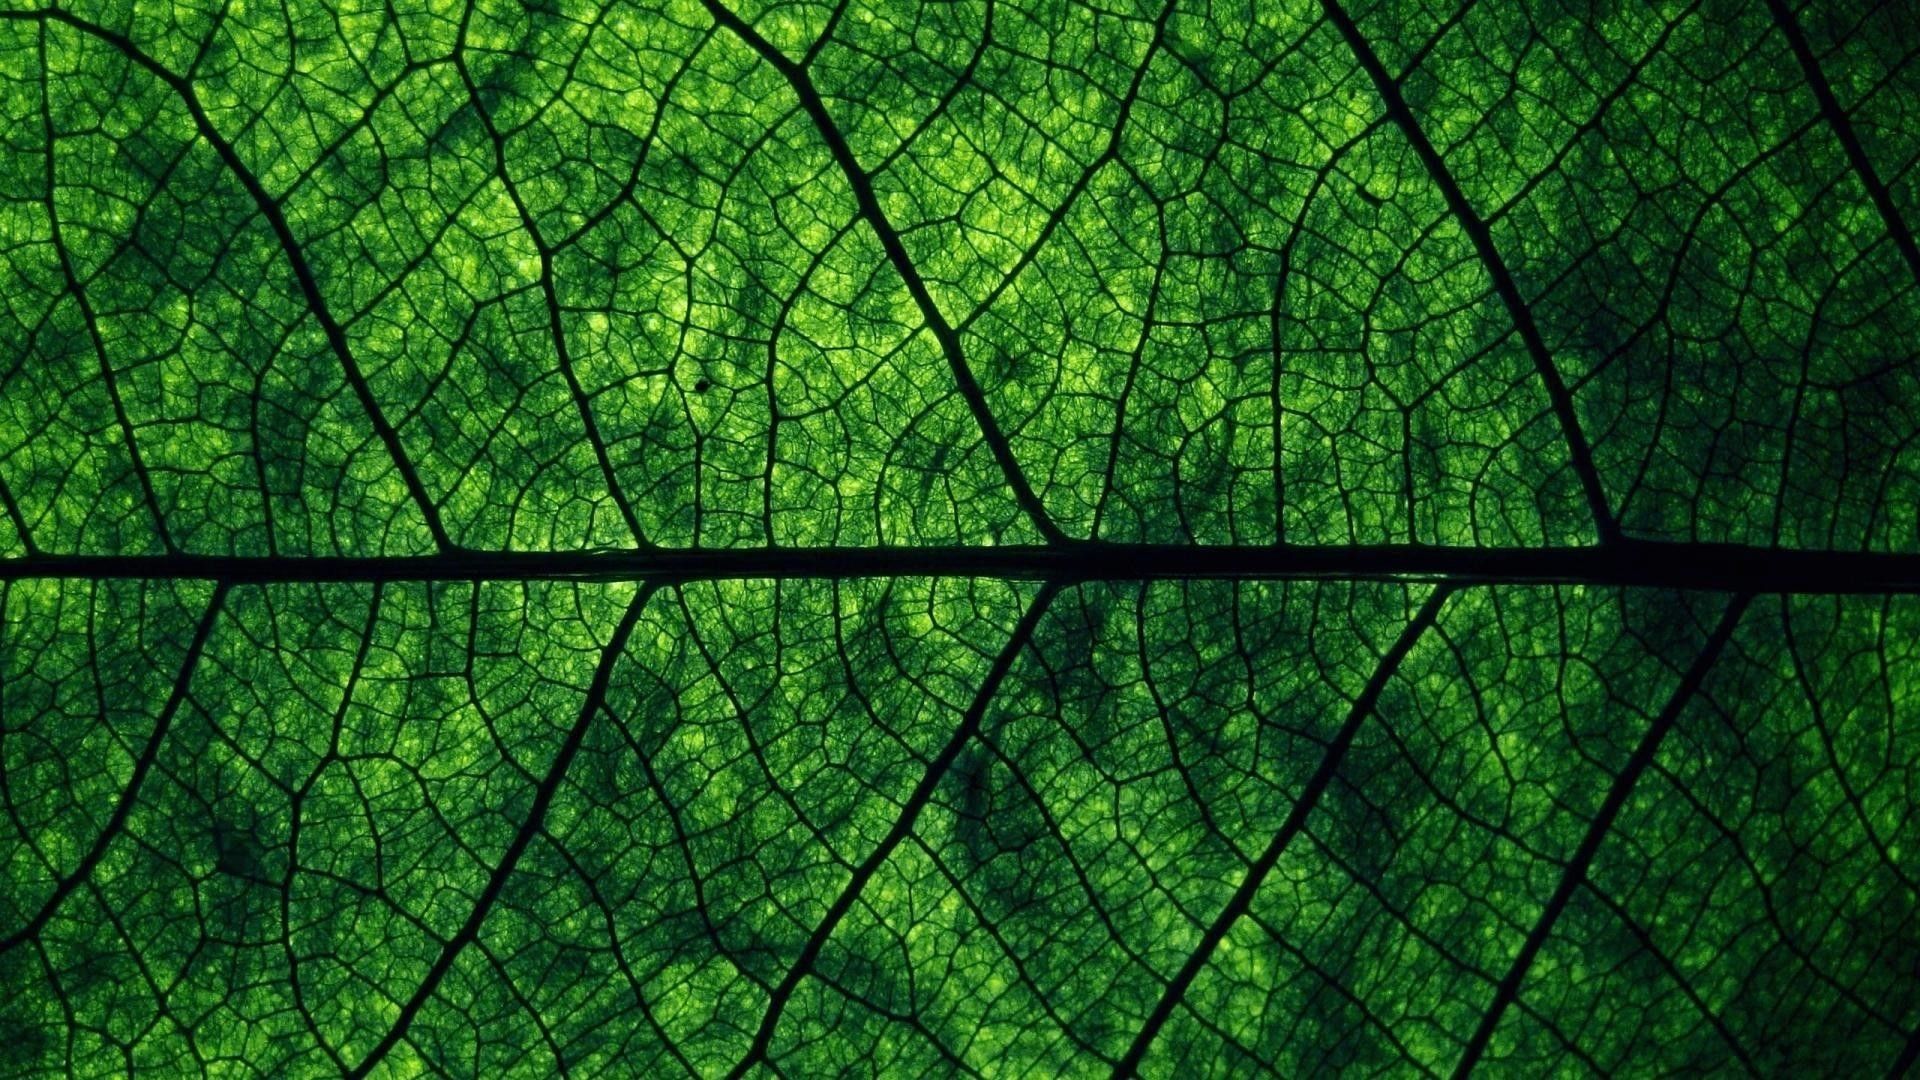 Cùng khám phá thế giới xanh tươi tắn của thiên nhiên với hình nền màu xanh lá cây đẹp nhất. Nền xanh tươi tràn đầy năng lượng, giúp bạn tạo động lực, tăng năng suất trong công việc. Click ngay để cập nhật chiếc máy tính của bạn với hình nền xanh lá cây đẹp mắt này!